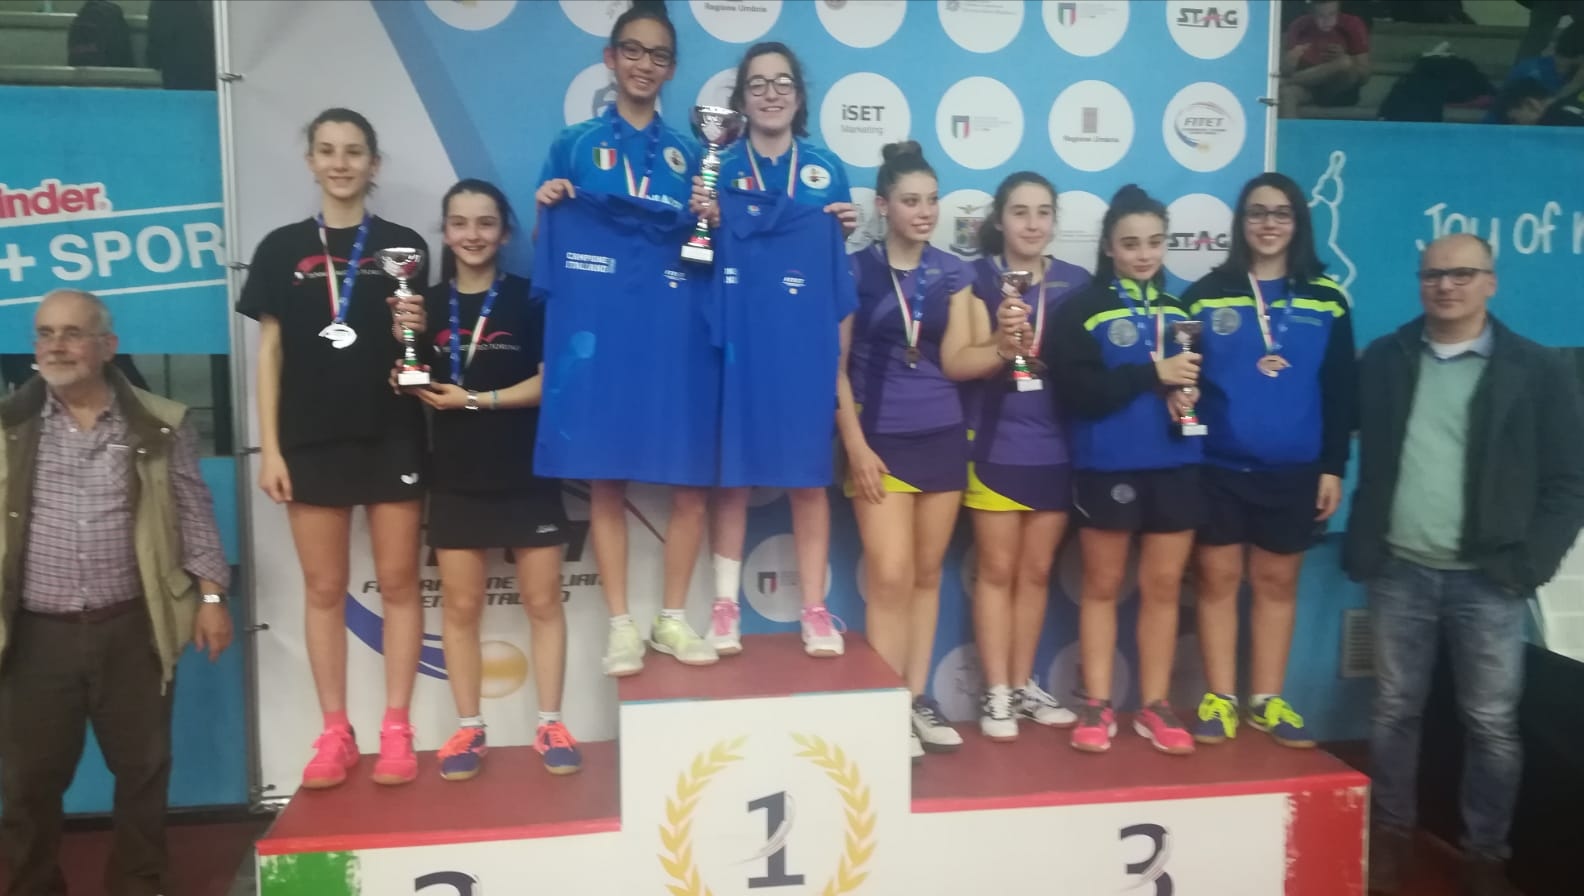 Podio Allieve Campionati Italiani giovanili a squadre 2019